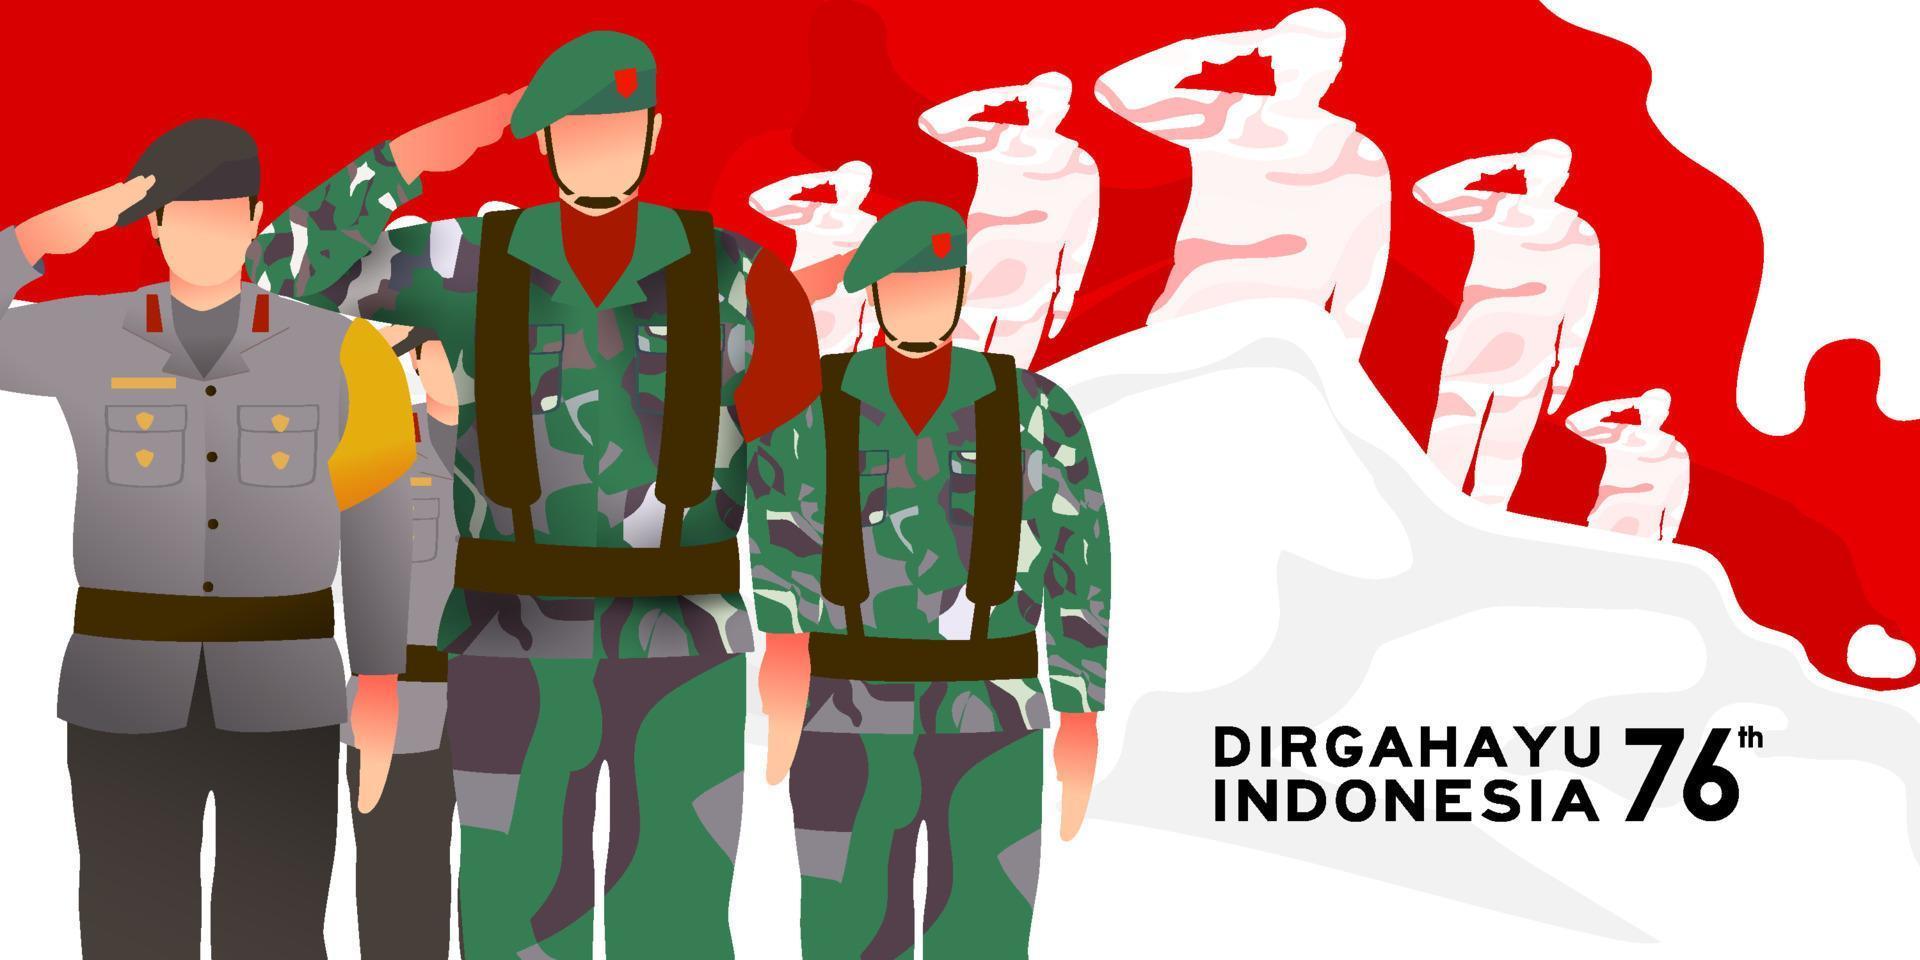 exército e polícia comemorando o feliz dia da independência indonésia juntos. 76 tahun kemerdekaan indonésia se traduz em 76 anos dia da independência da indonésia vetor